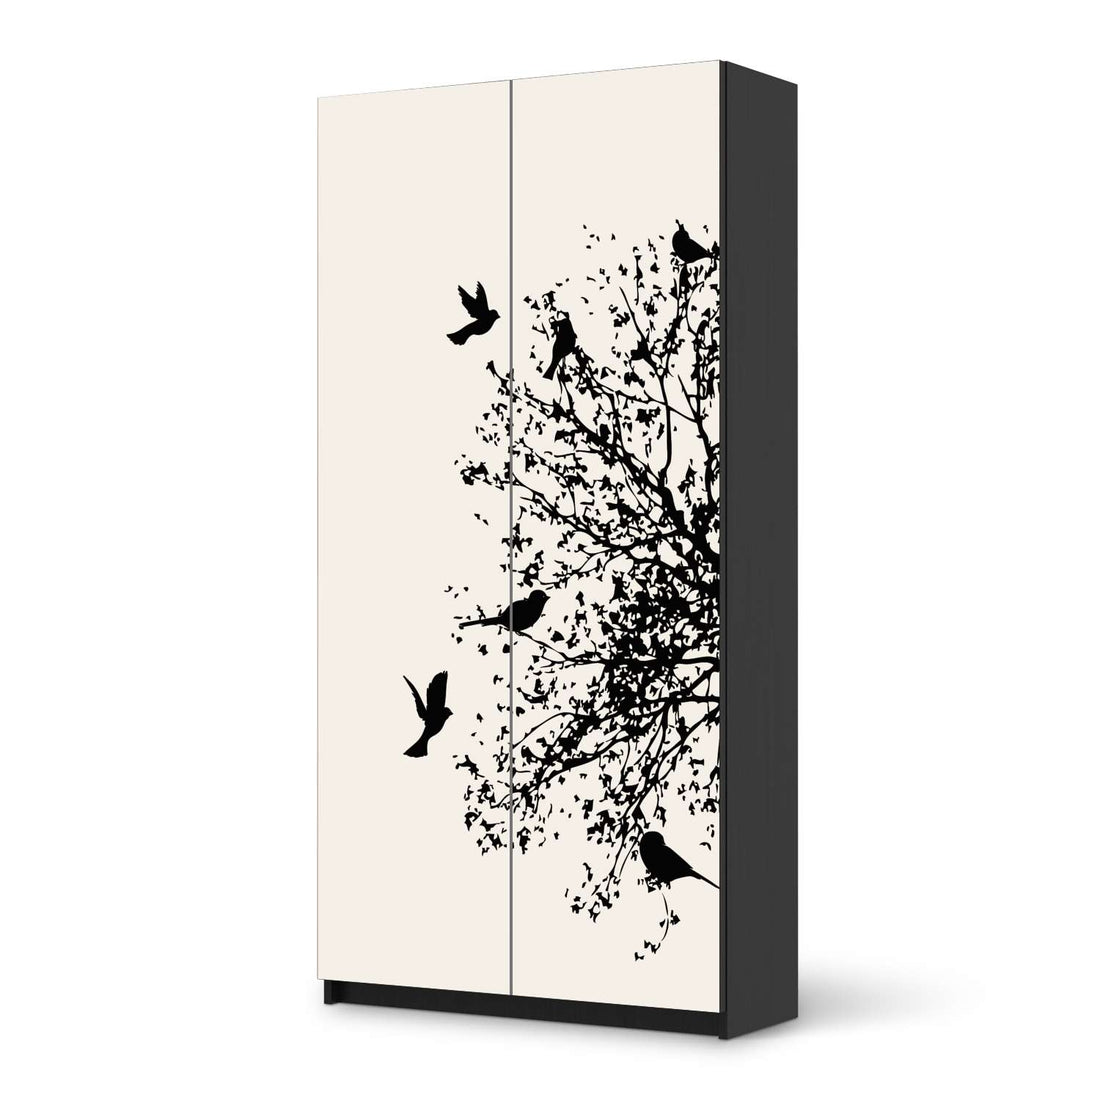 Klebefolie für Möbel Tree and Birds 2 - IKEA Pax Schrank 201 cm Höhe - 2 Türen - schwarz